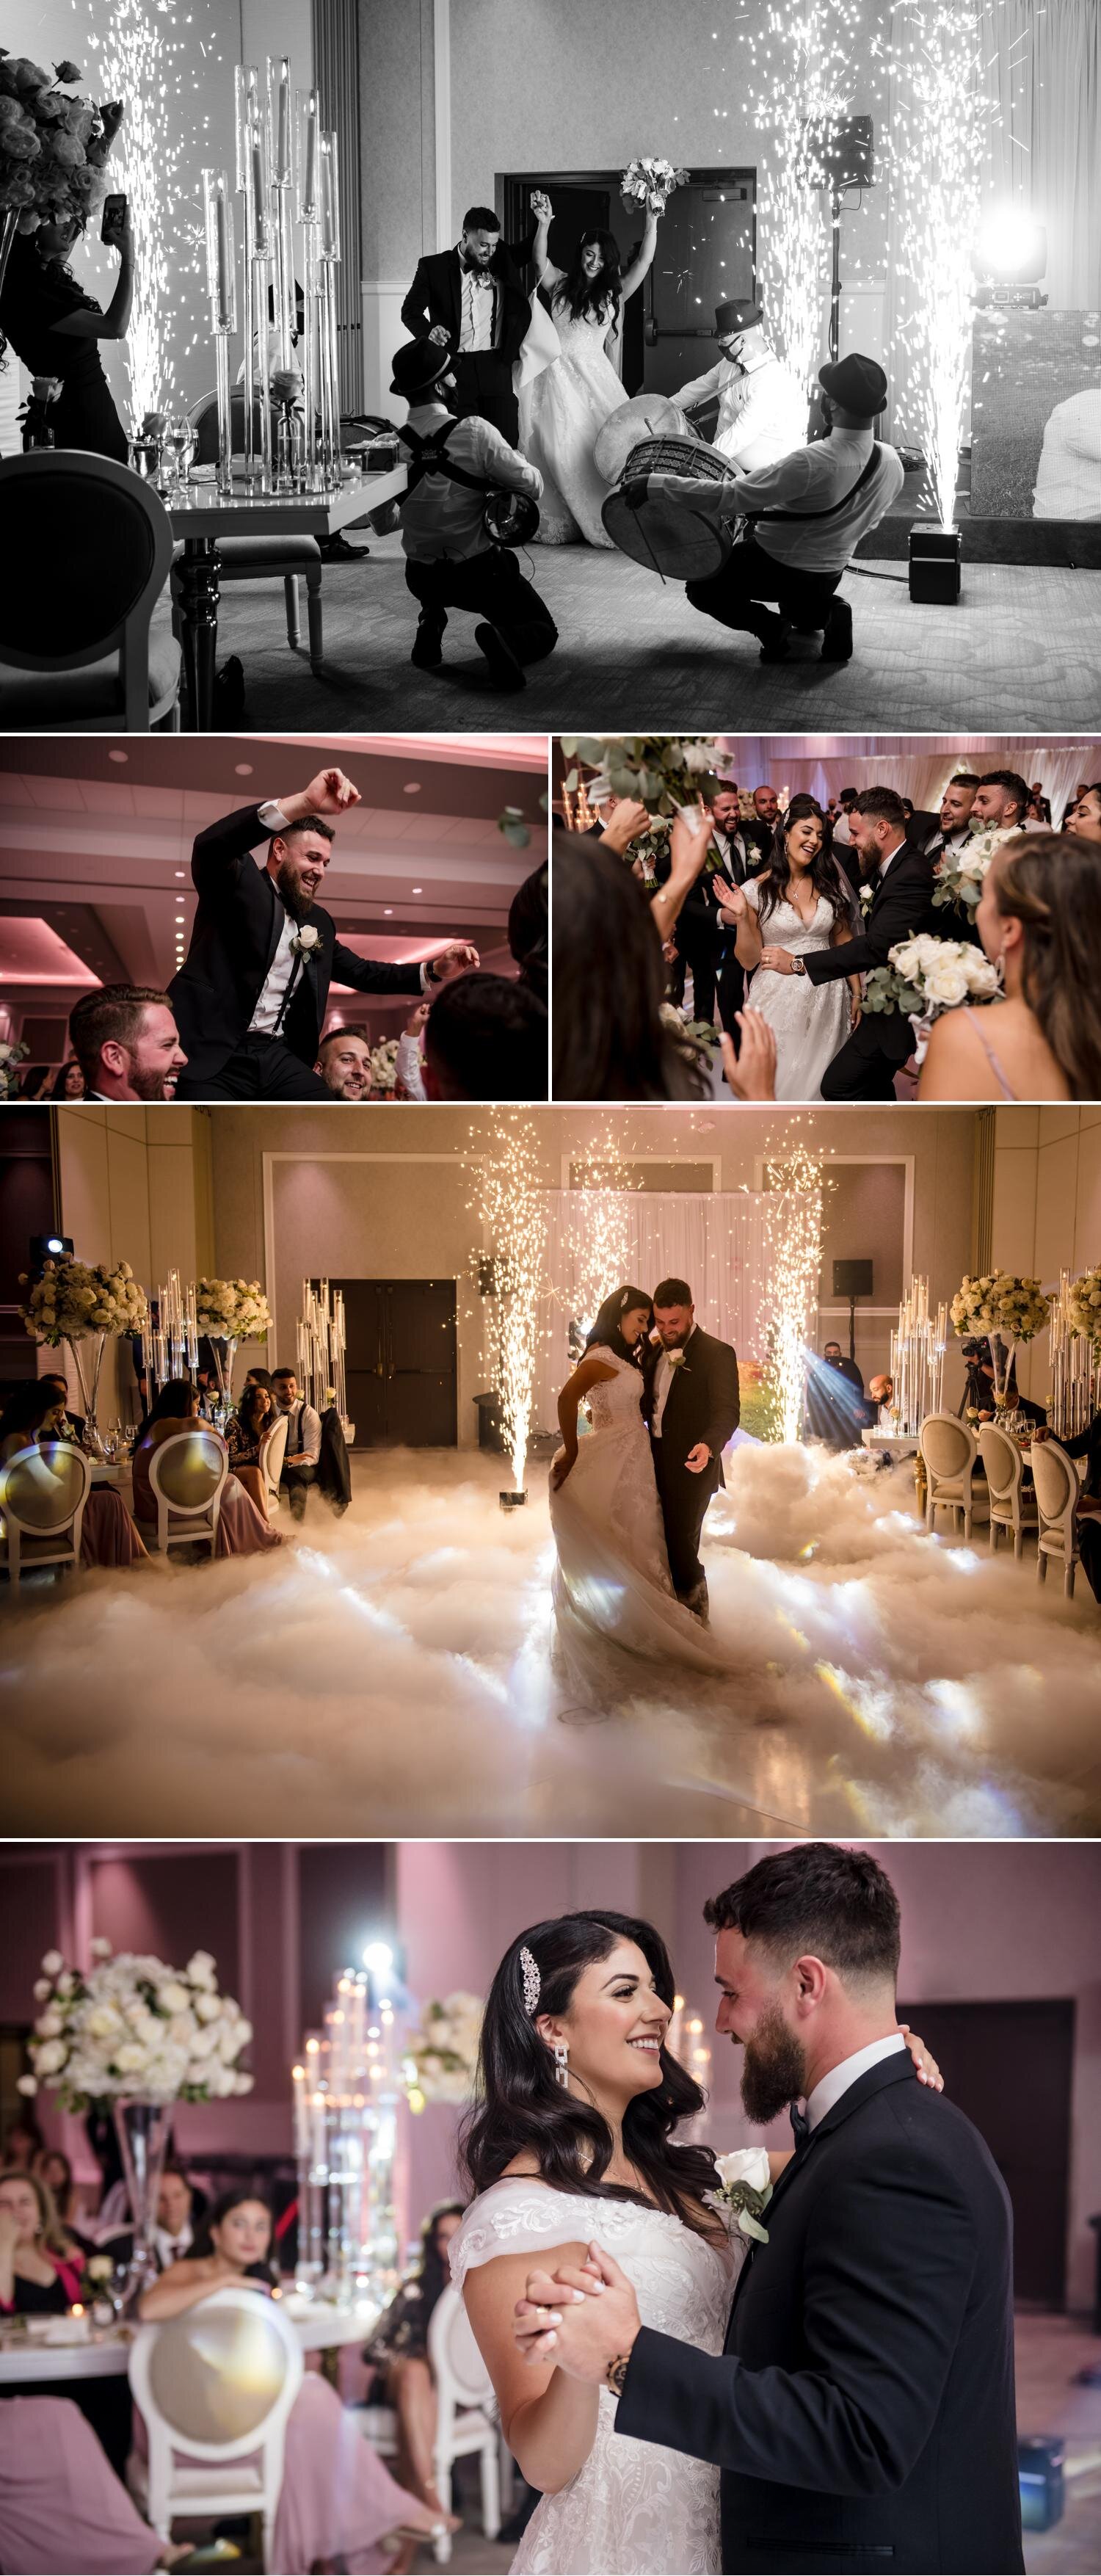 Lebanese wedding reception photos